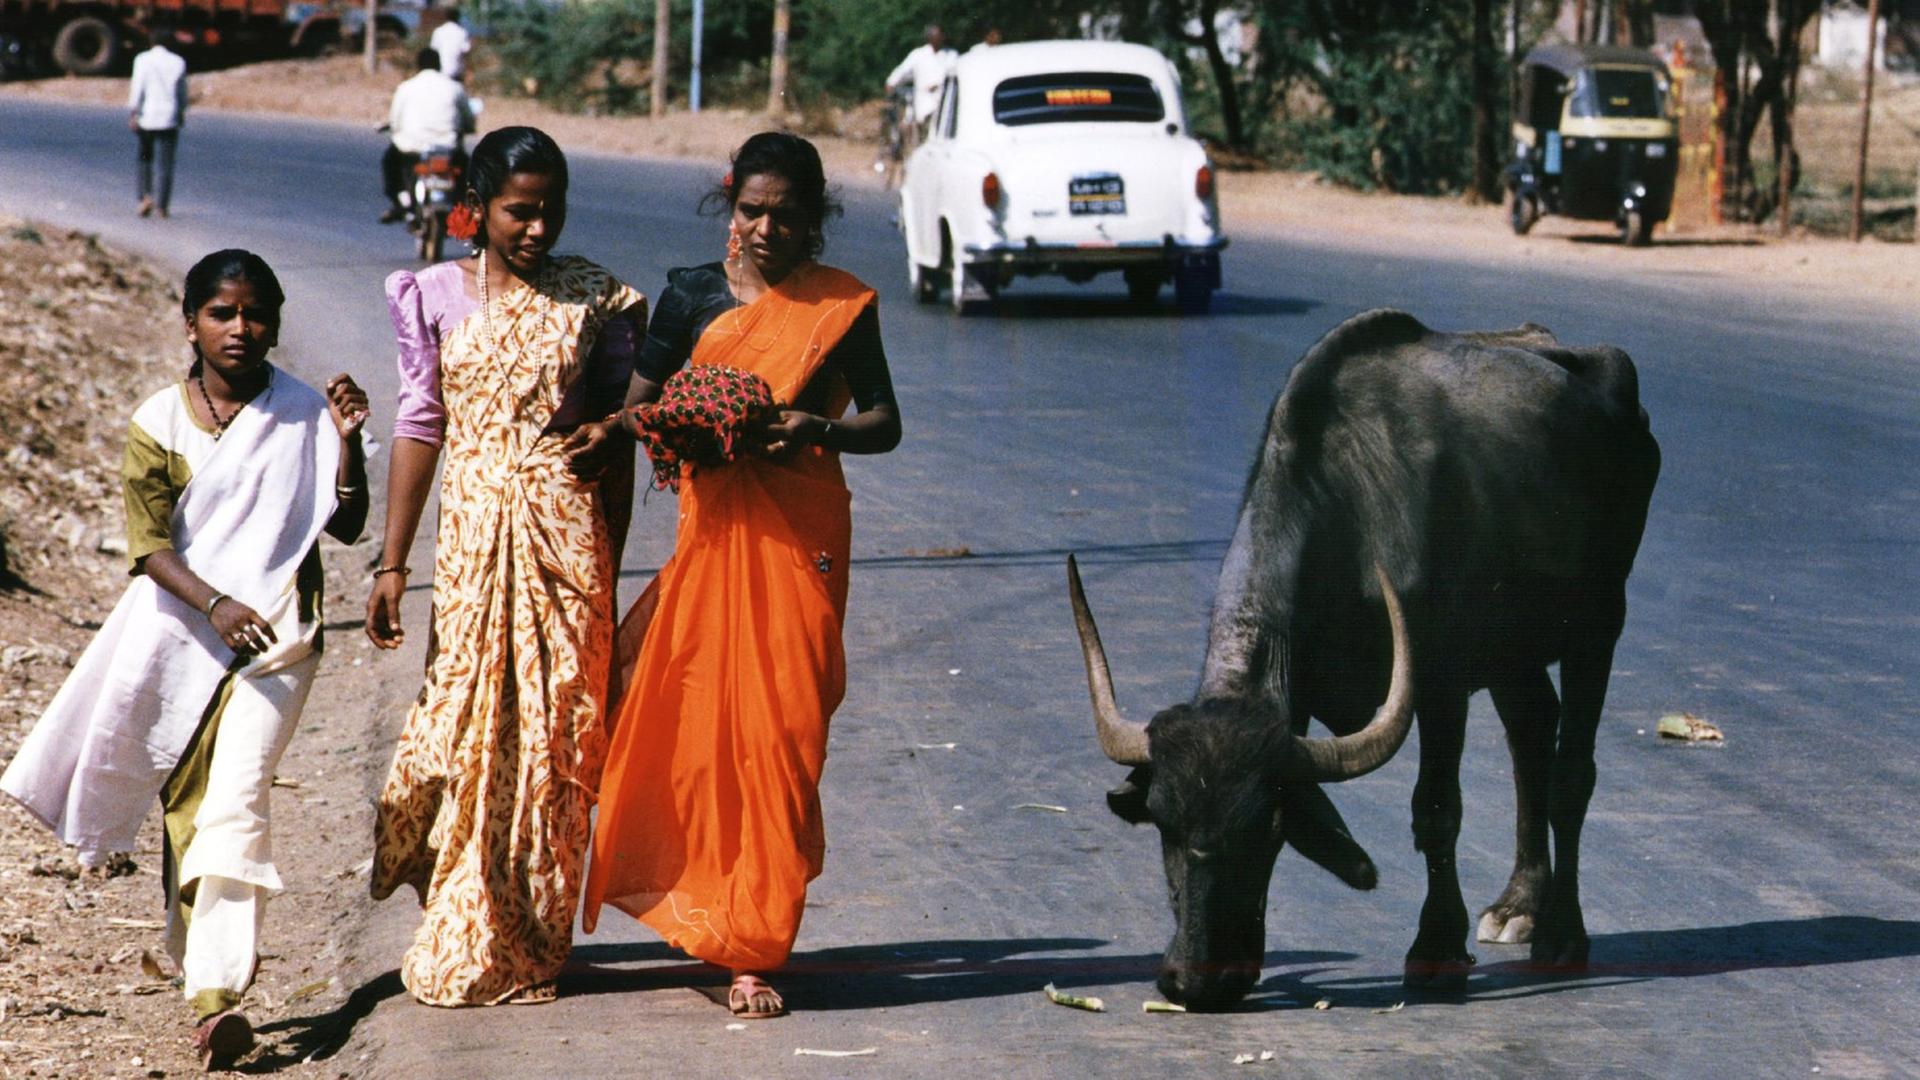 Drei Inderinnen in traditionellen Saris laufen auf einer Straße in Bangalore an einer Heiligen Kuh vorbei.